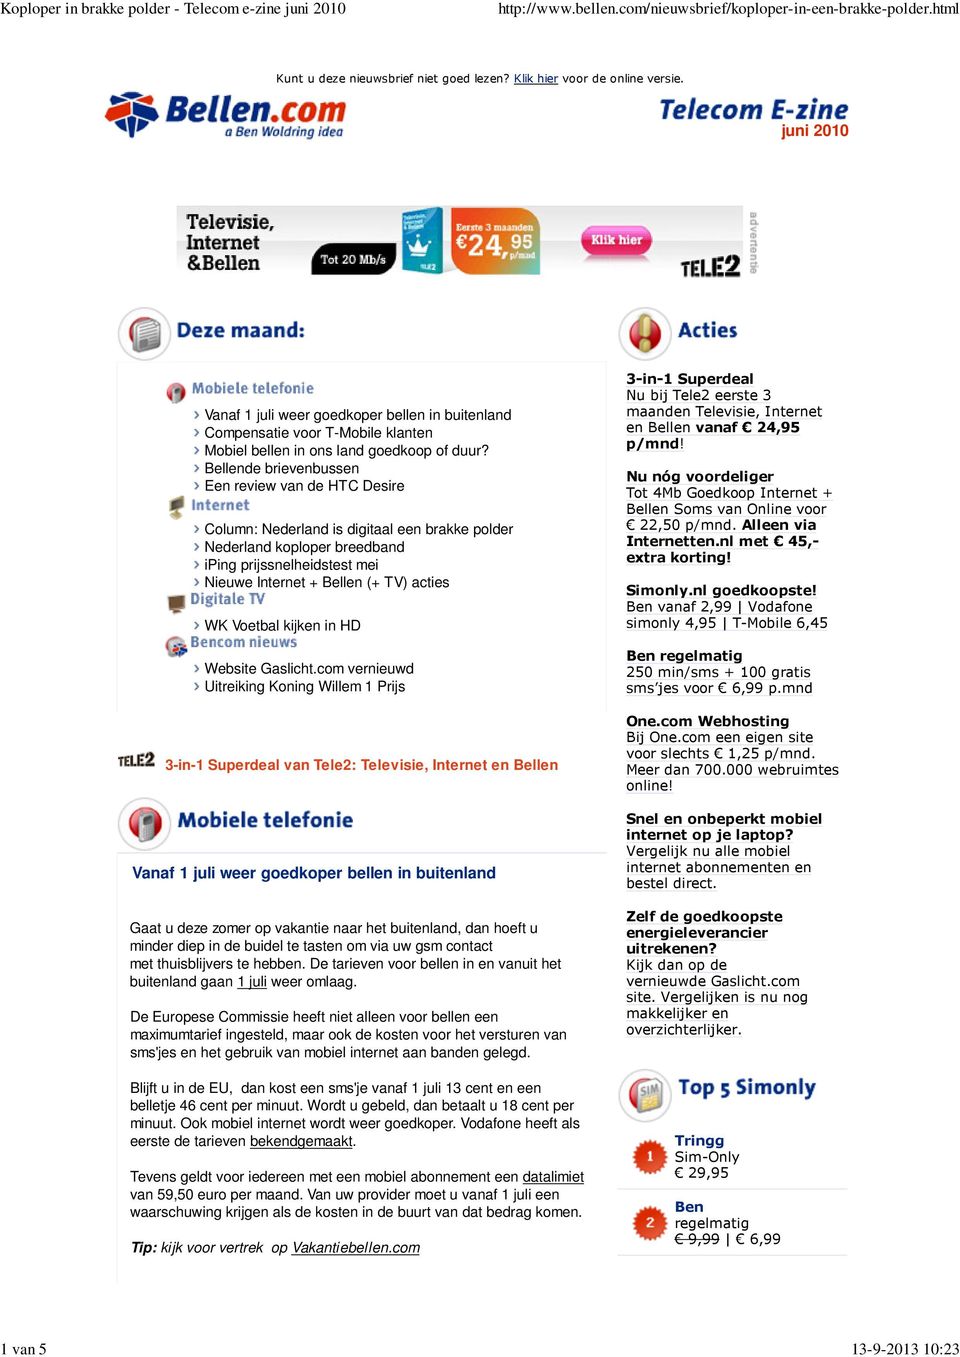 Bellende brievenbussen Een review van de HTC Desire Column: Nederland is digitaal een brakke polder Nederland koploper breedband iping prijssnelheidstest mei Nieuwe Internet + Bellen (+ TV) acties WK